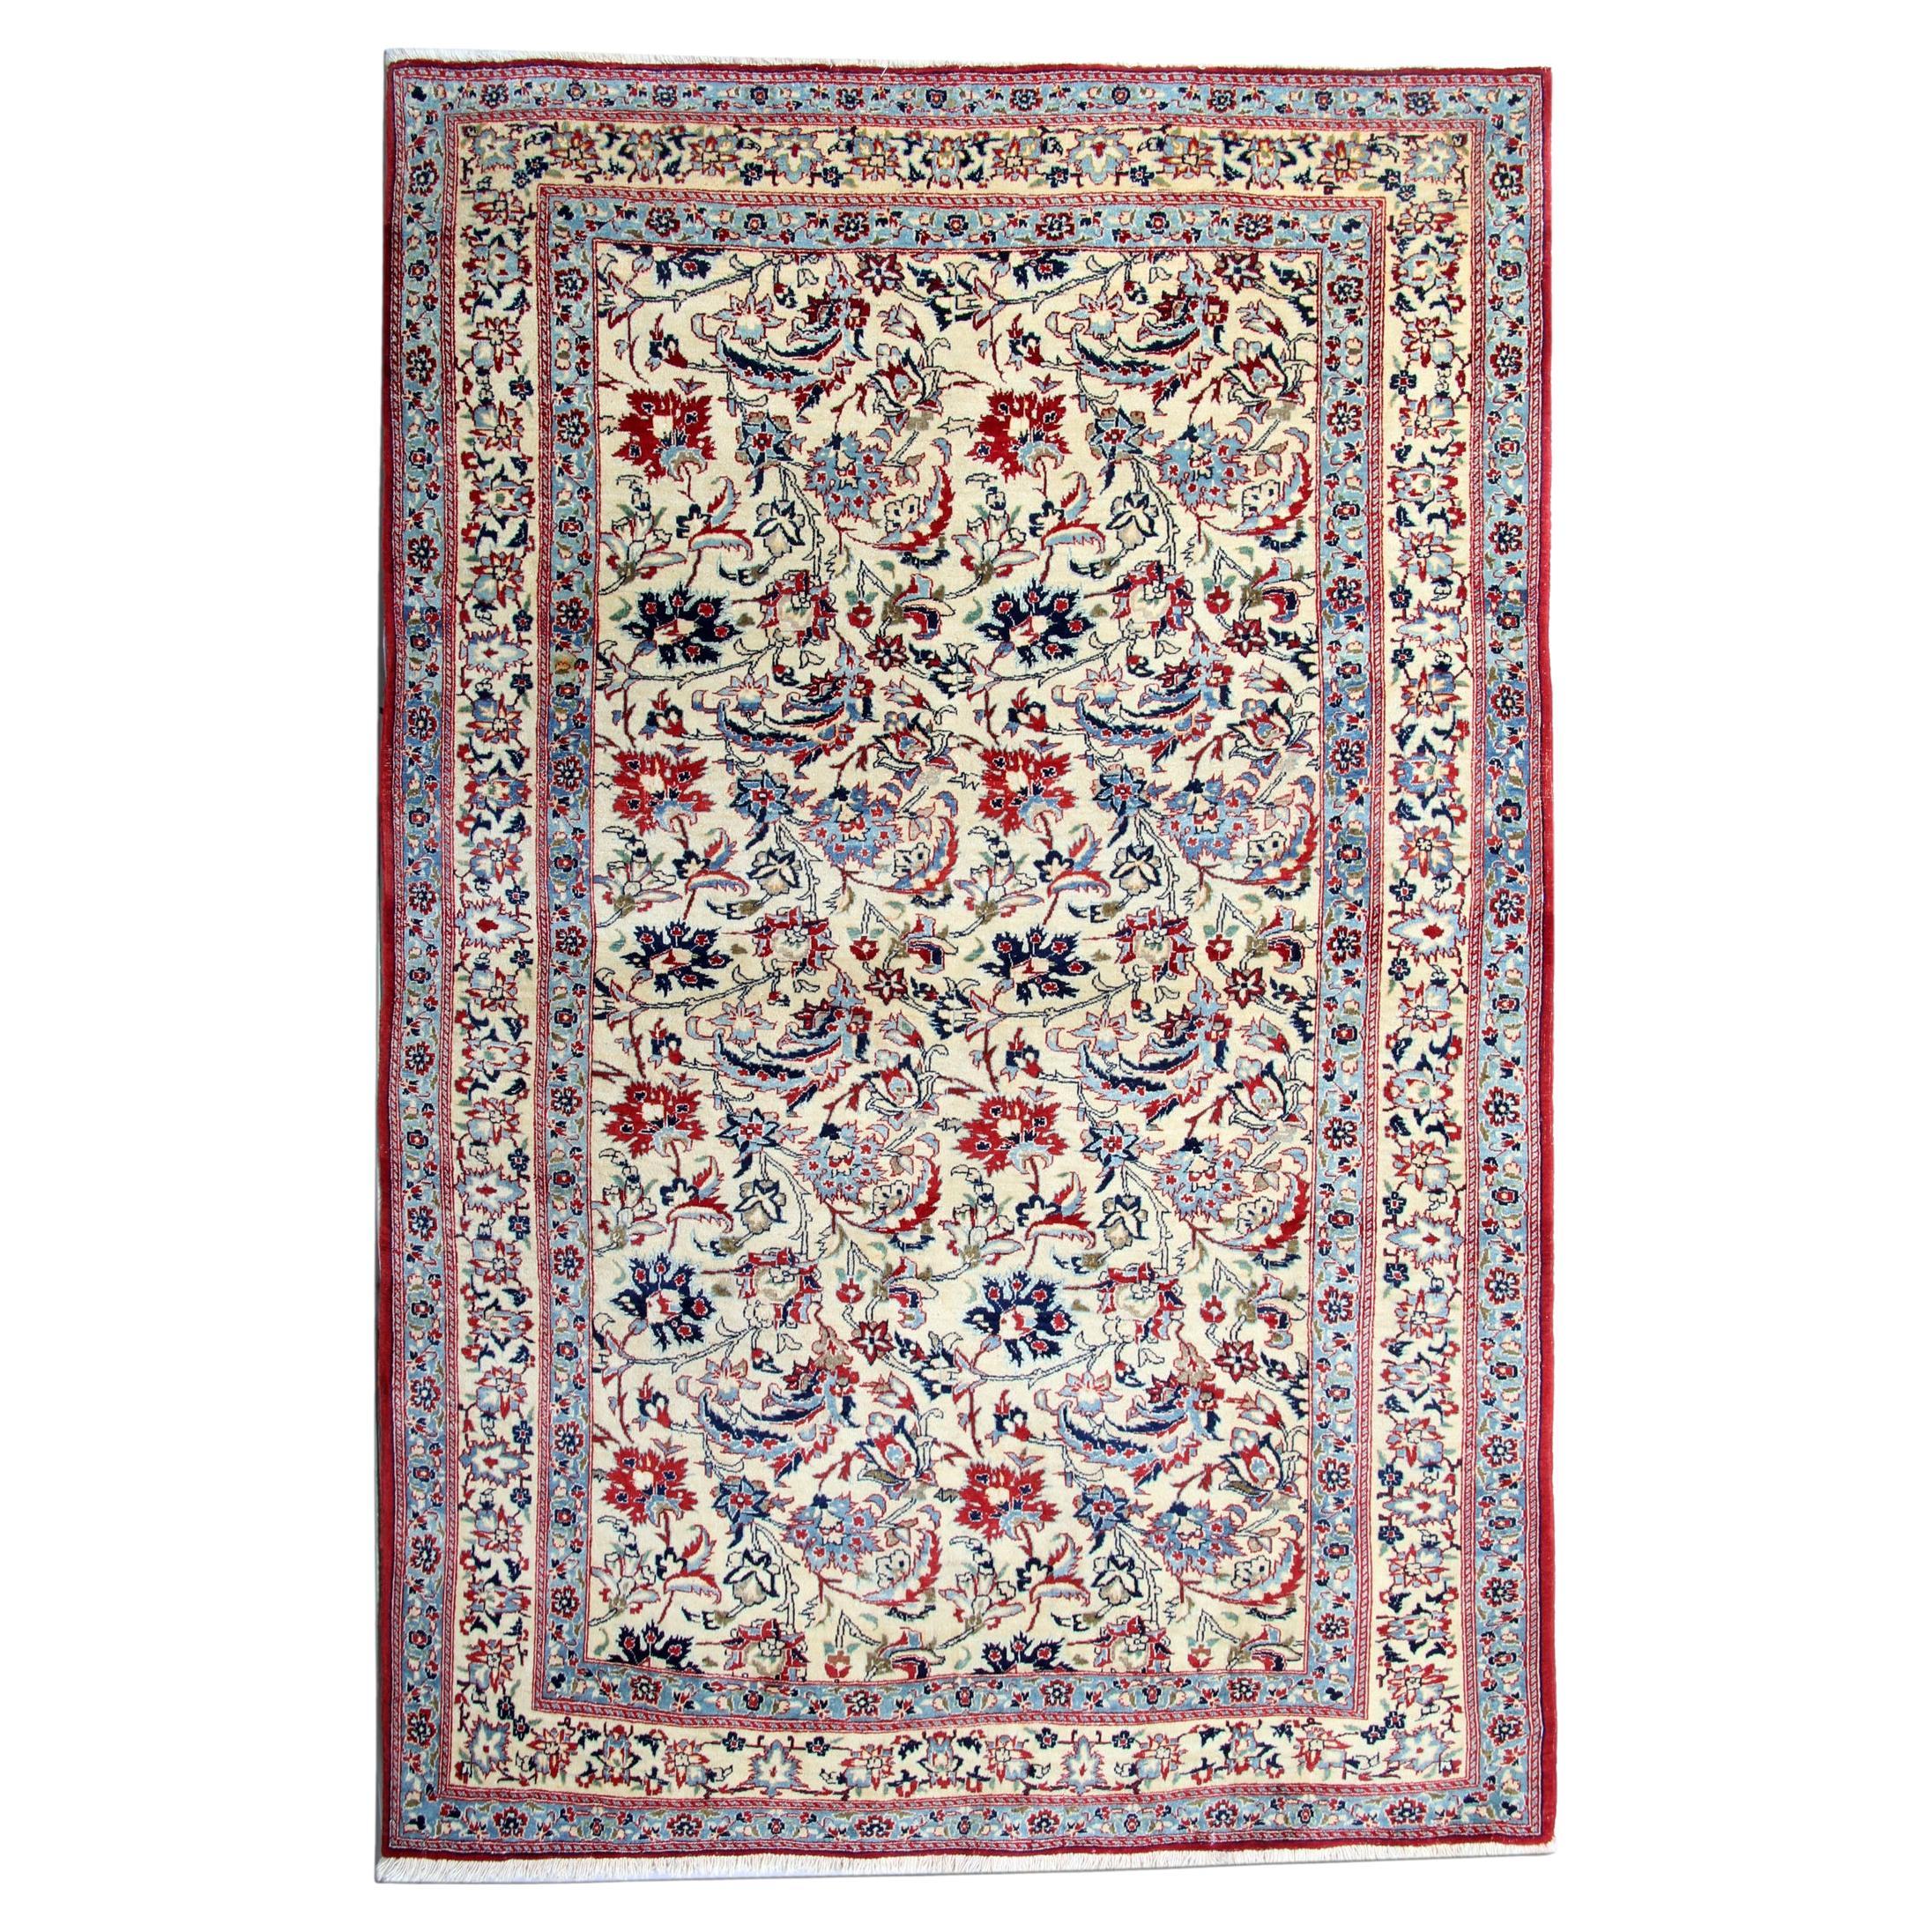 Antique Floral Rug Handwoven Carpet Cream Blue Wool Living Room Rug For Sale